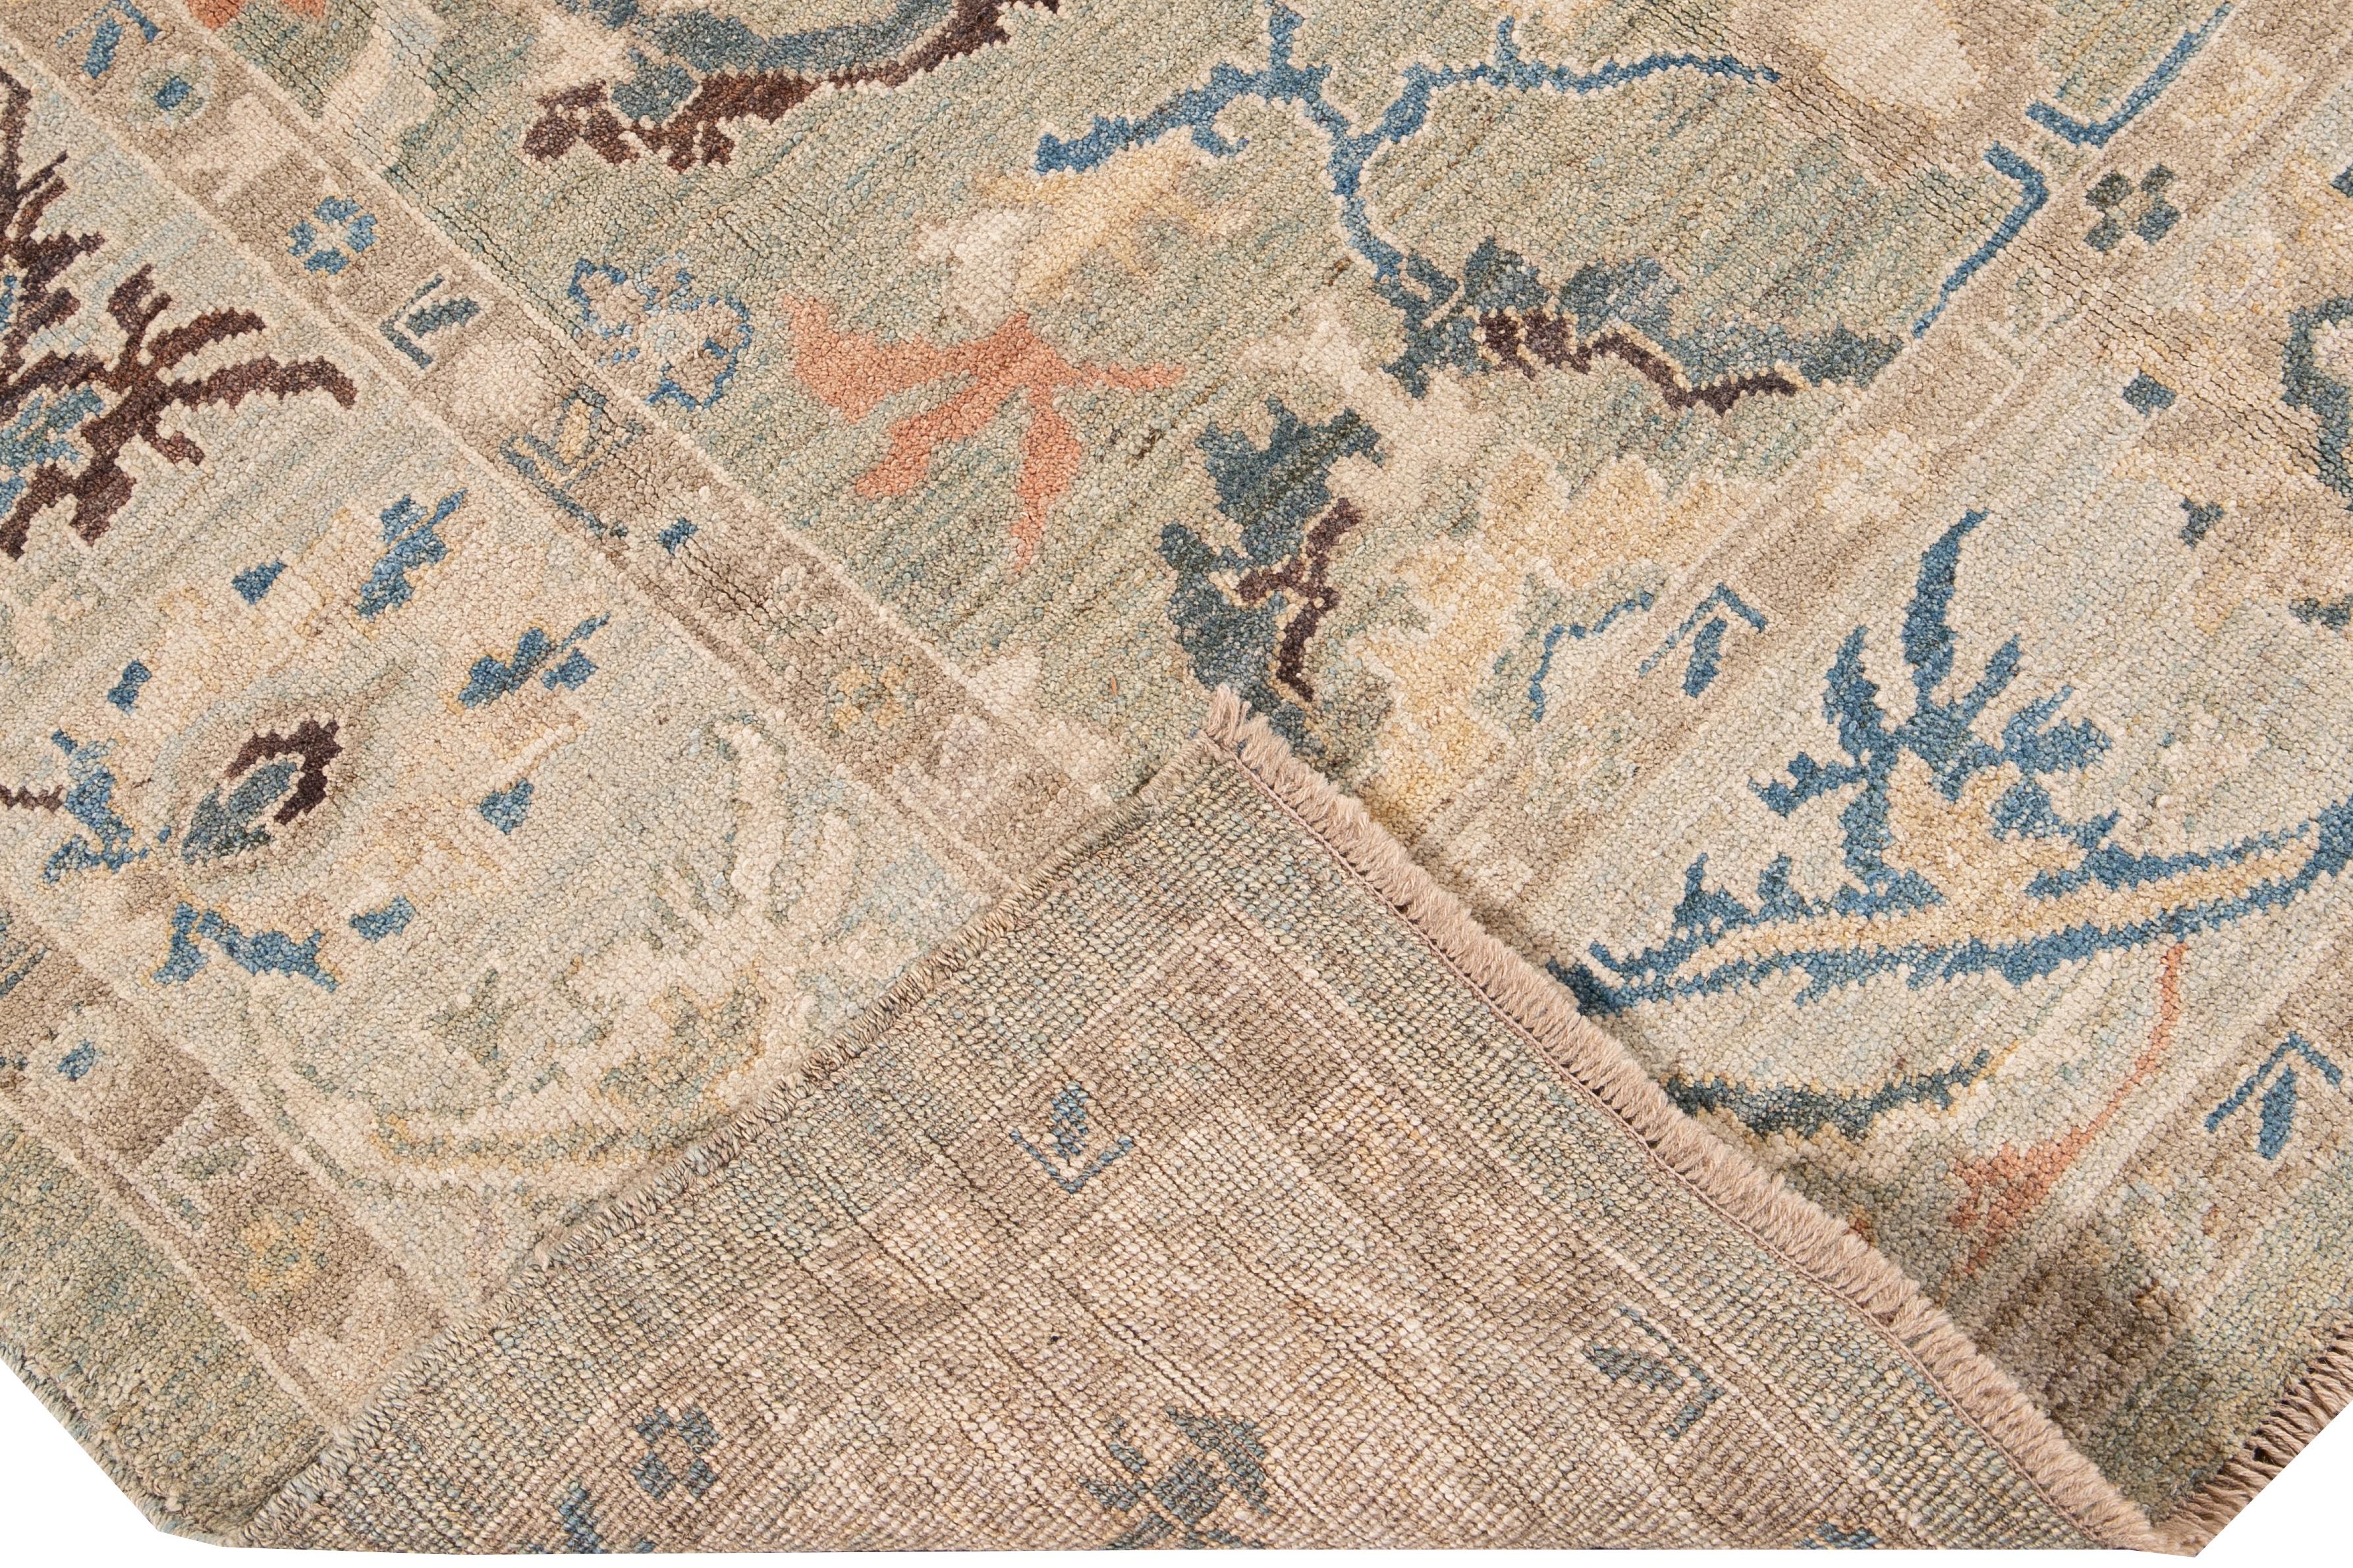 Magnifique tapis moderne Sultanabad en laine nouée à la main avec un champ beige. Ce tapis Sultanabad a un cadre bleu et des accents ivoire, jaune, bleu et pêche dans un magnifique motif floral géométrique classique.

Ce tapis mesure : 6'1